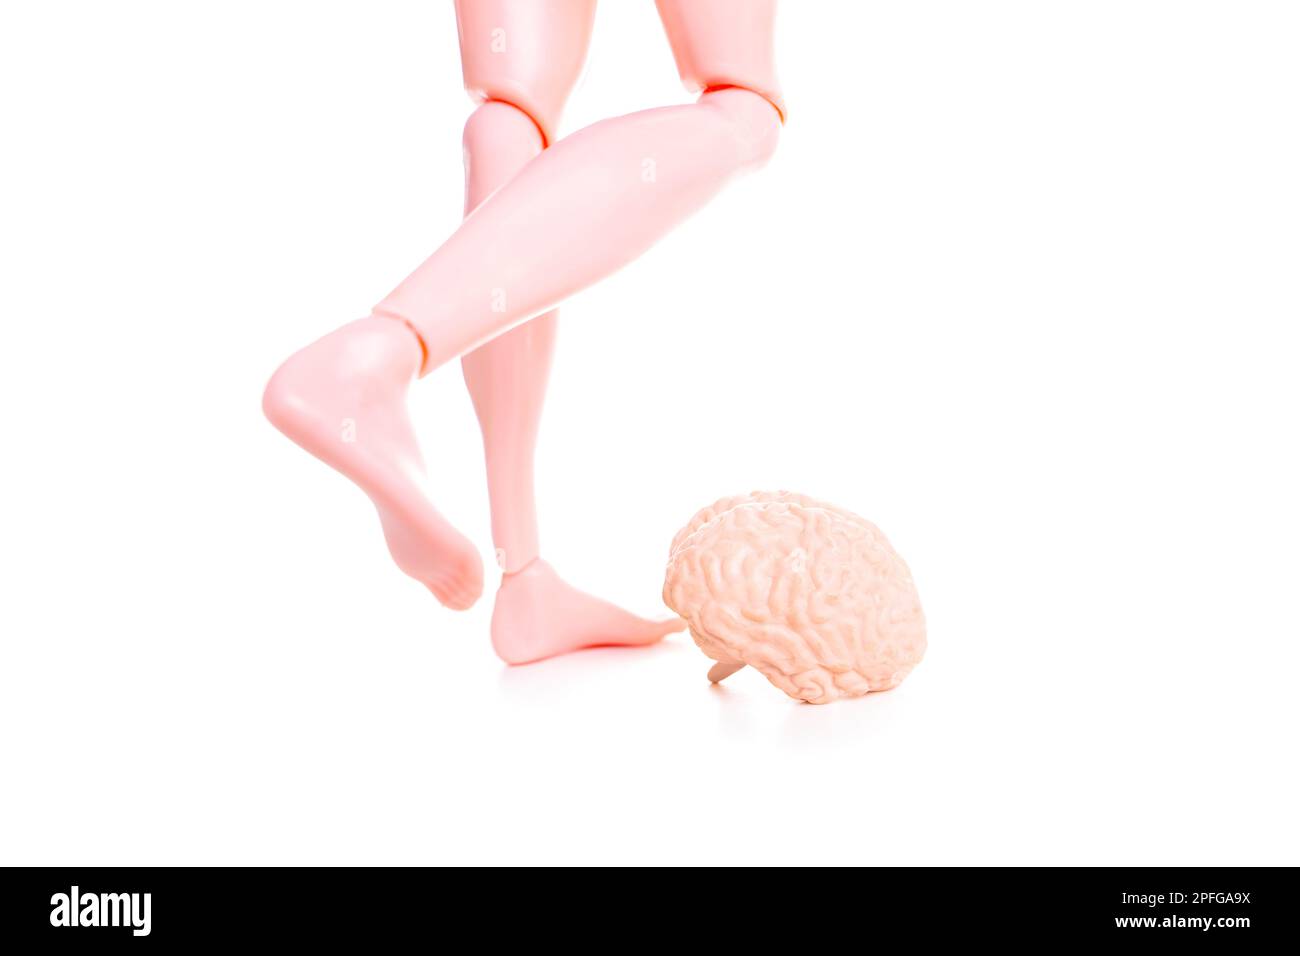 Die Spielzeugpuppe zieht sich zusammen, um ein kleines menschliches Gehirnmodell wie einen Fußball zu treten. Komisches Konzept, die Kontrolle über den Verstand zu übernehmen und negativ zu „treten“ Stockfoto